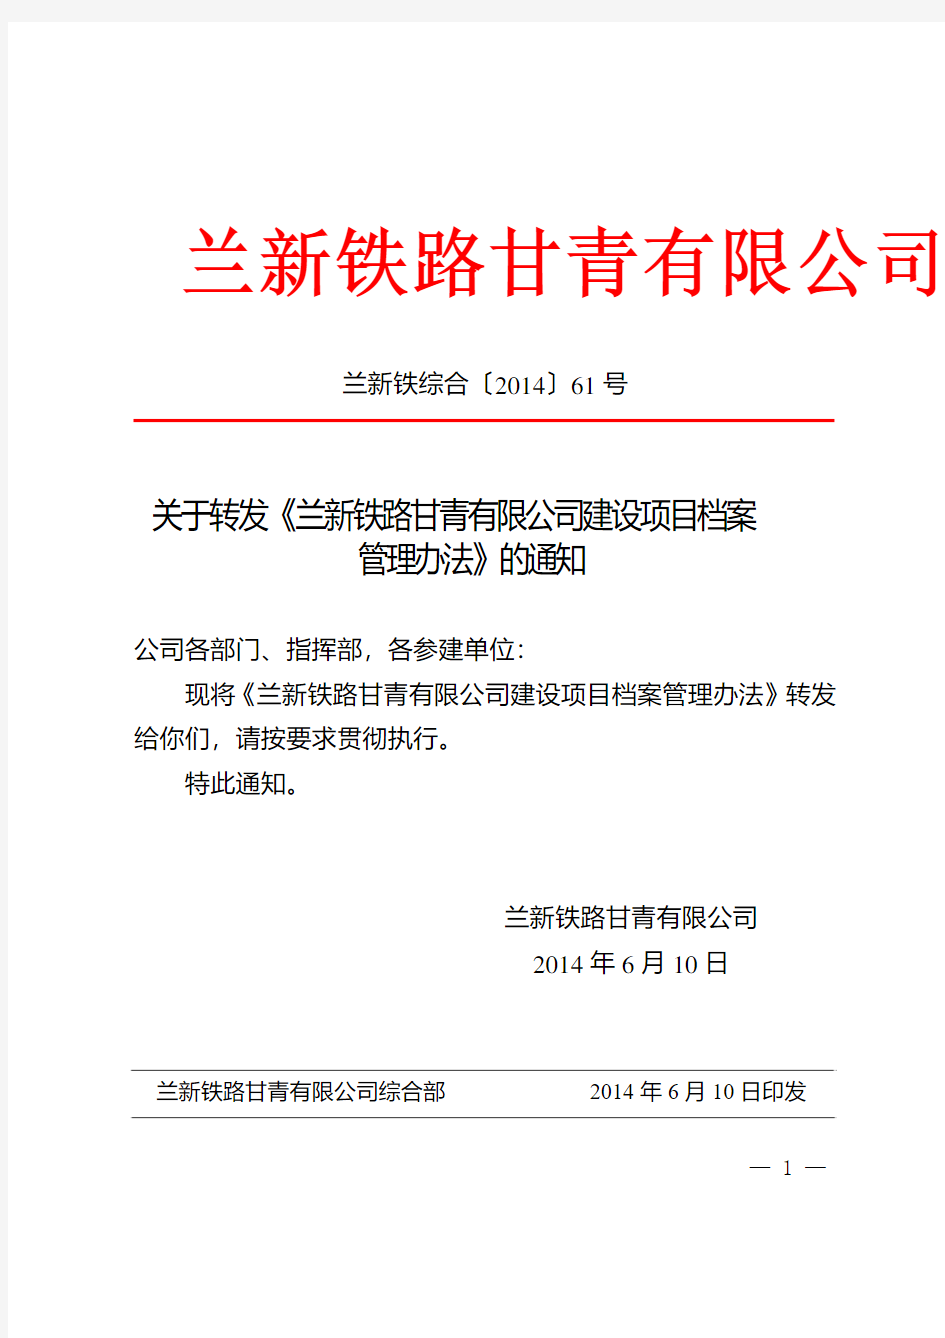 61----兰新铁路甘青有限公司建设项目档案管理办法6.10